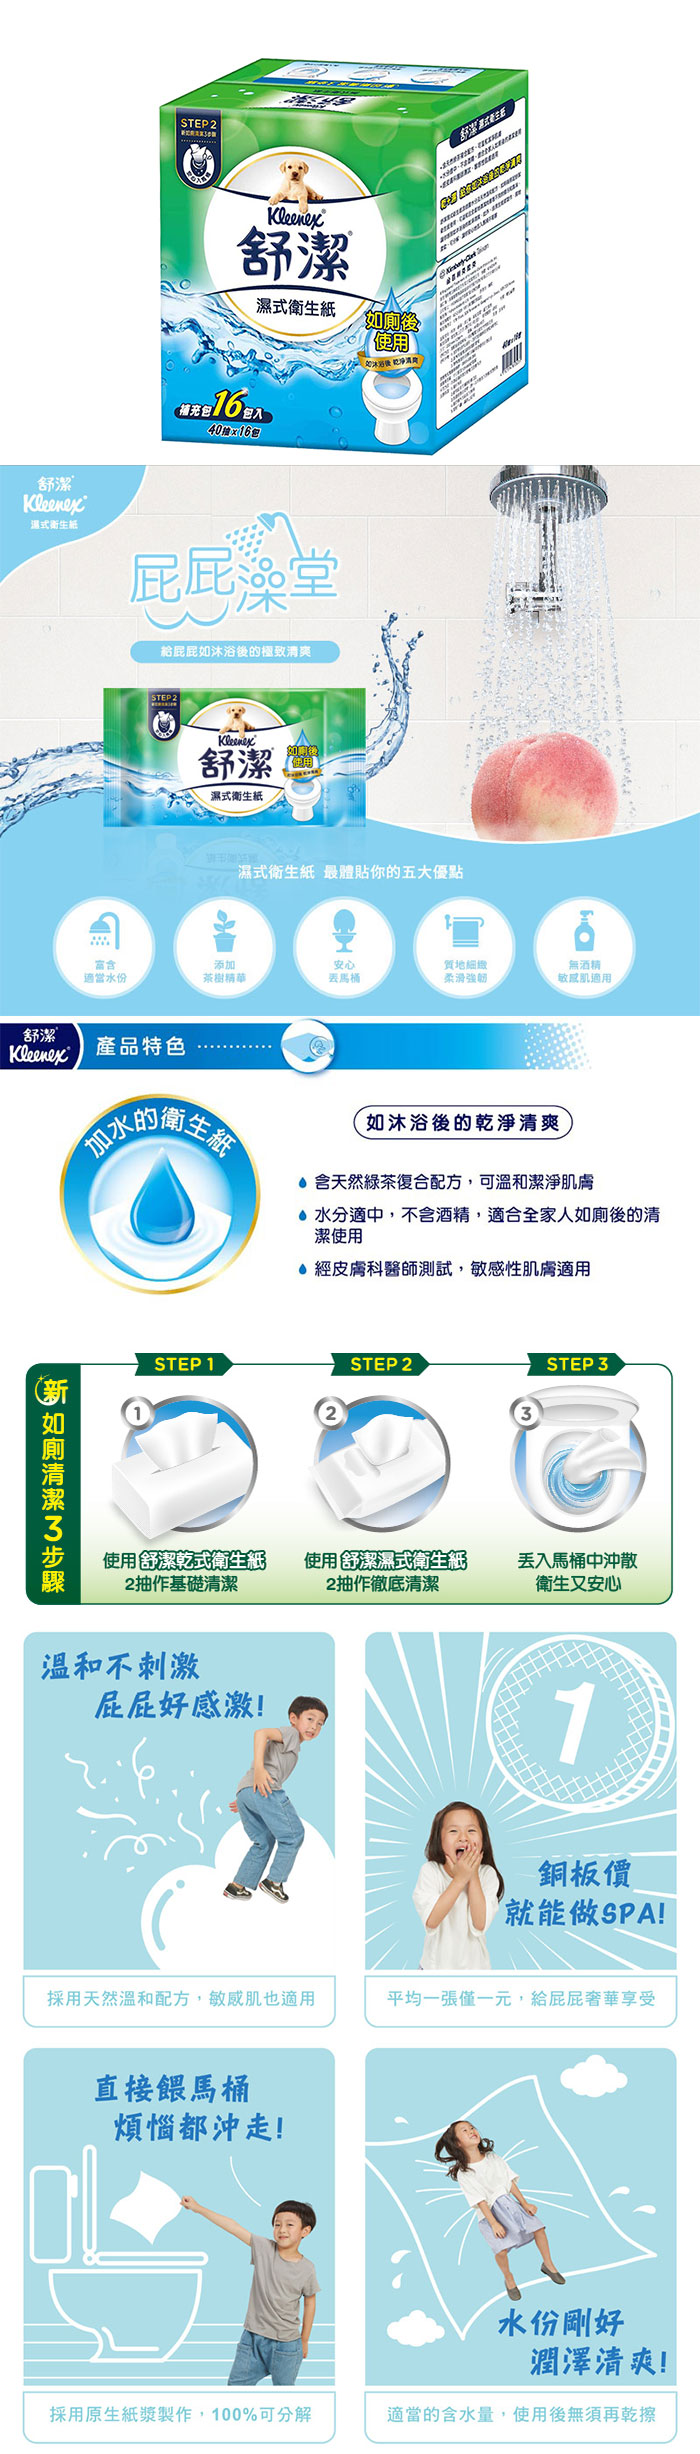 【舒潔 Kleenex】濕式衛生紙補充包(40抽x16包/箱)